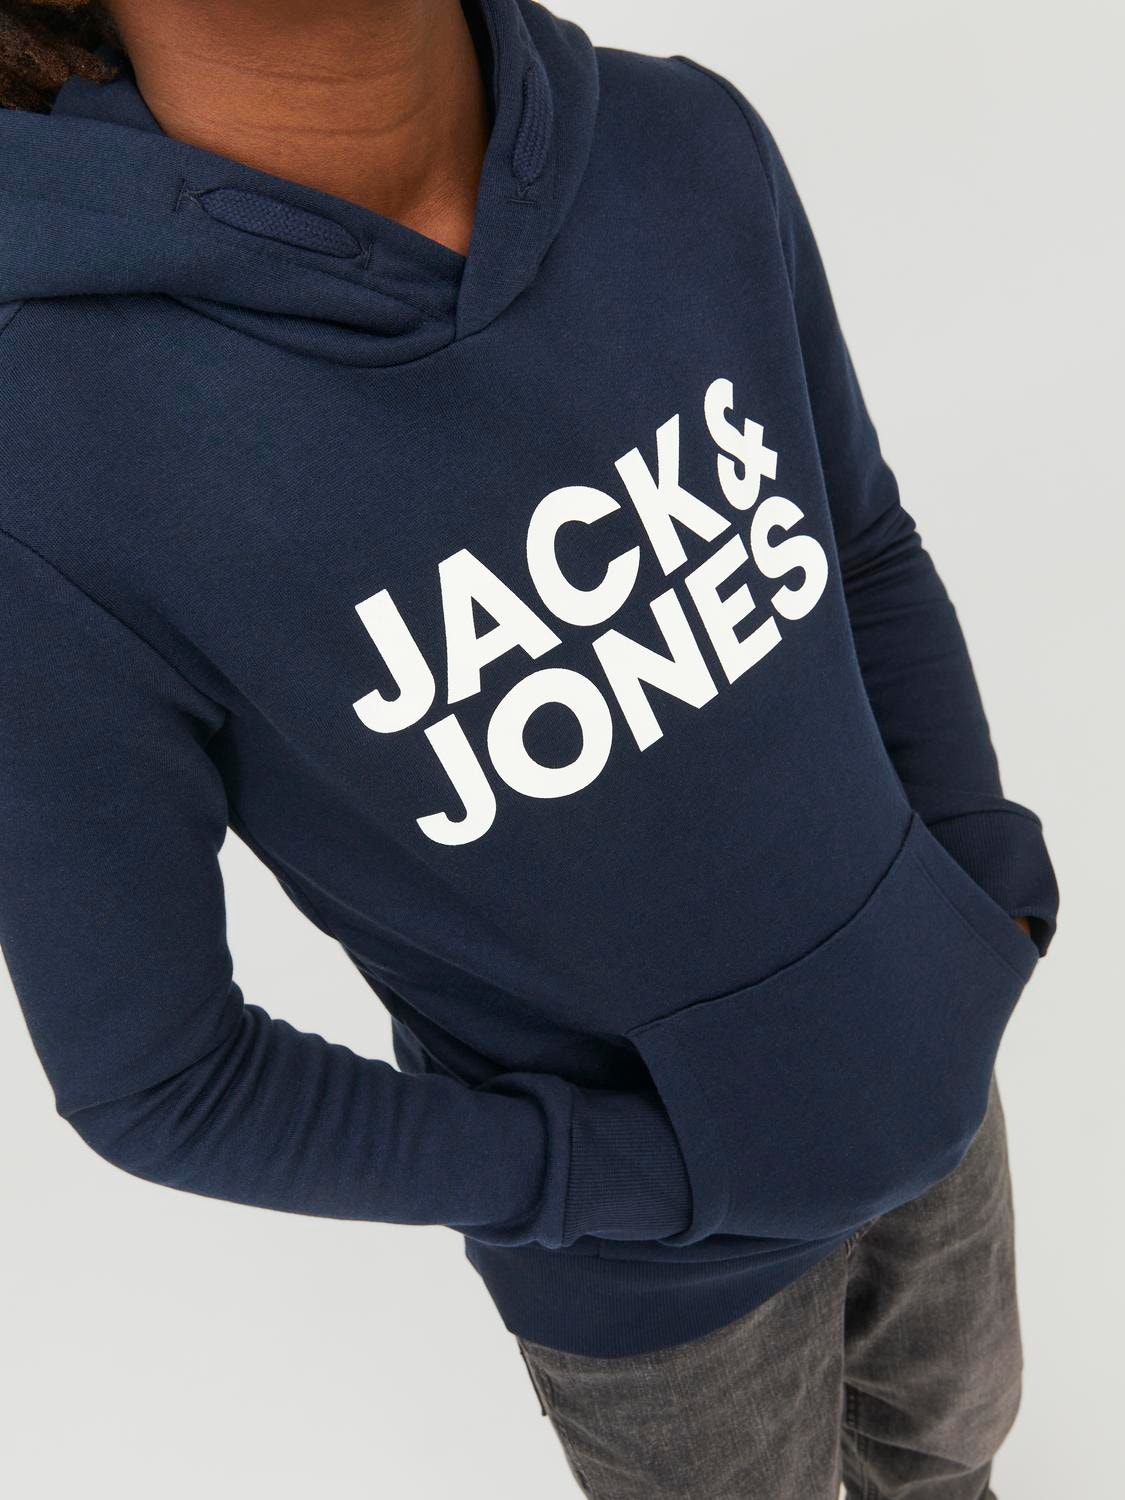 Jack & Jones Z logo Bluza z kapturem Dla chłopców -Navy Blazer - 12152841